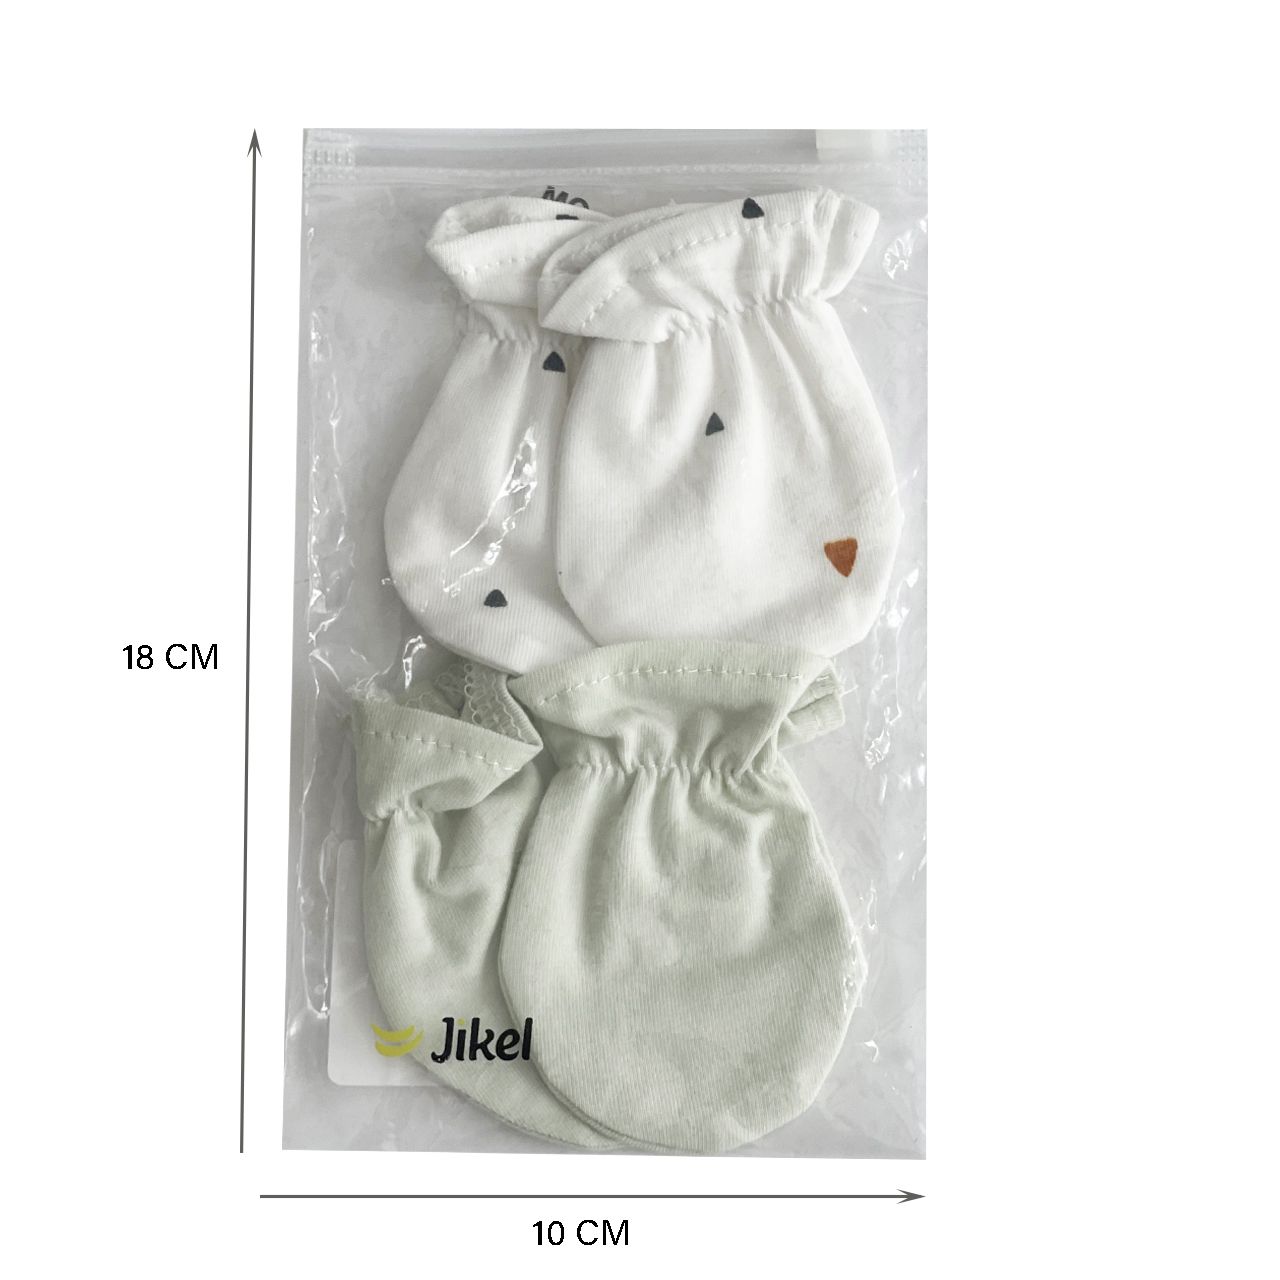 دستکش نوزادی جیکل مدل Jk902311-53 بسته 2 عددی -  - 3